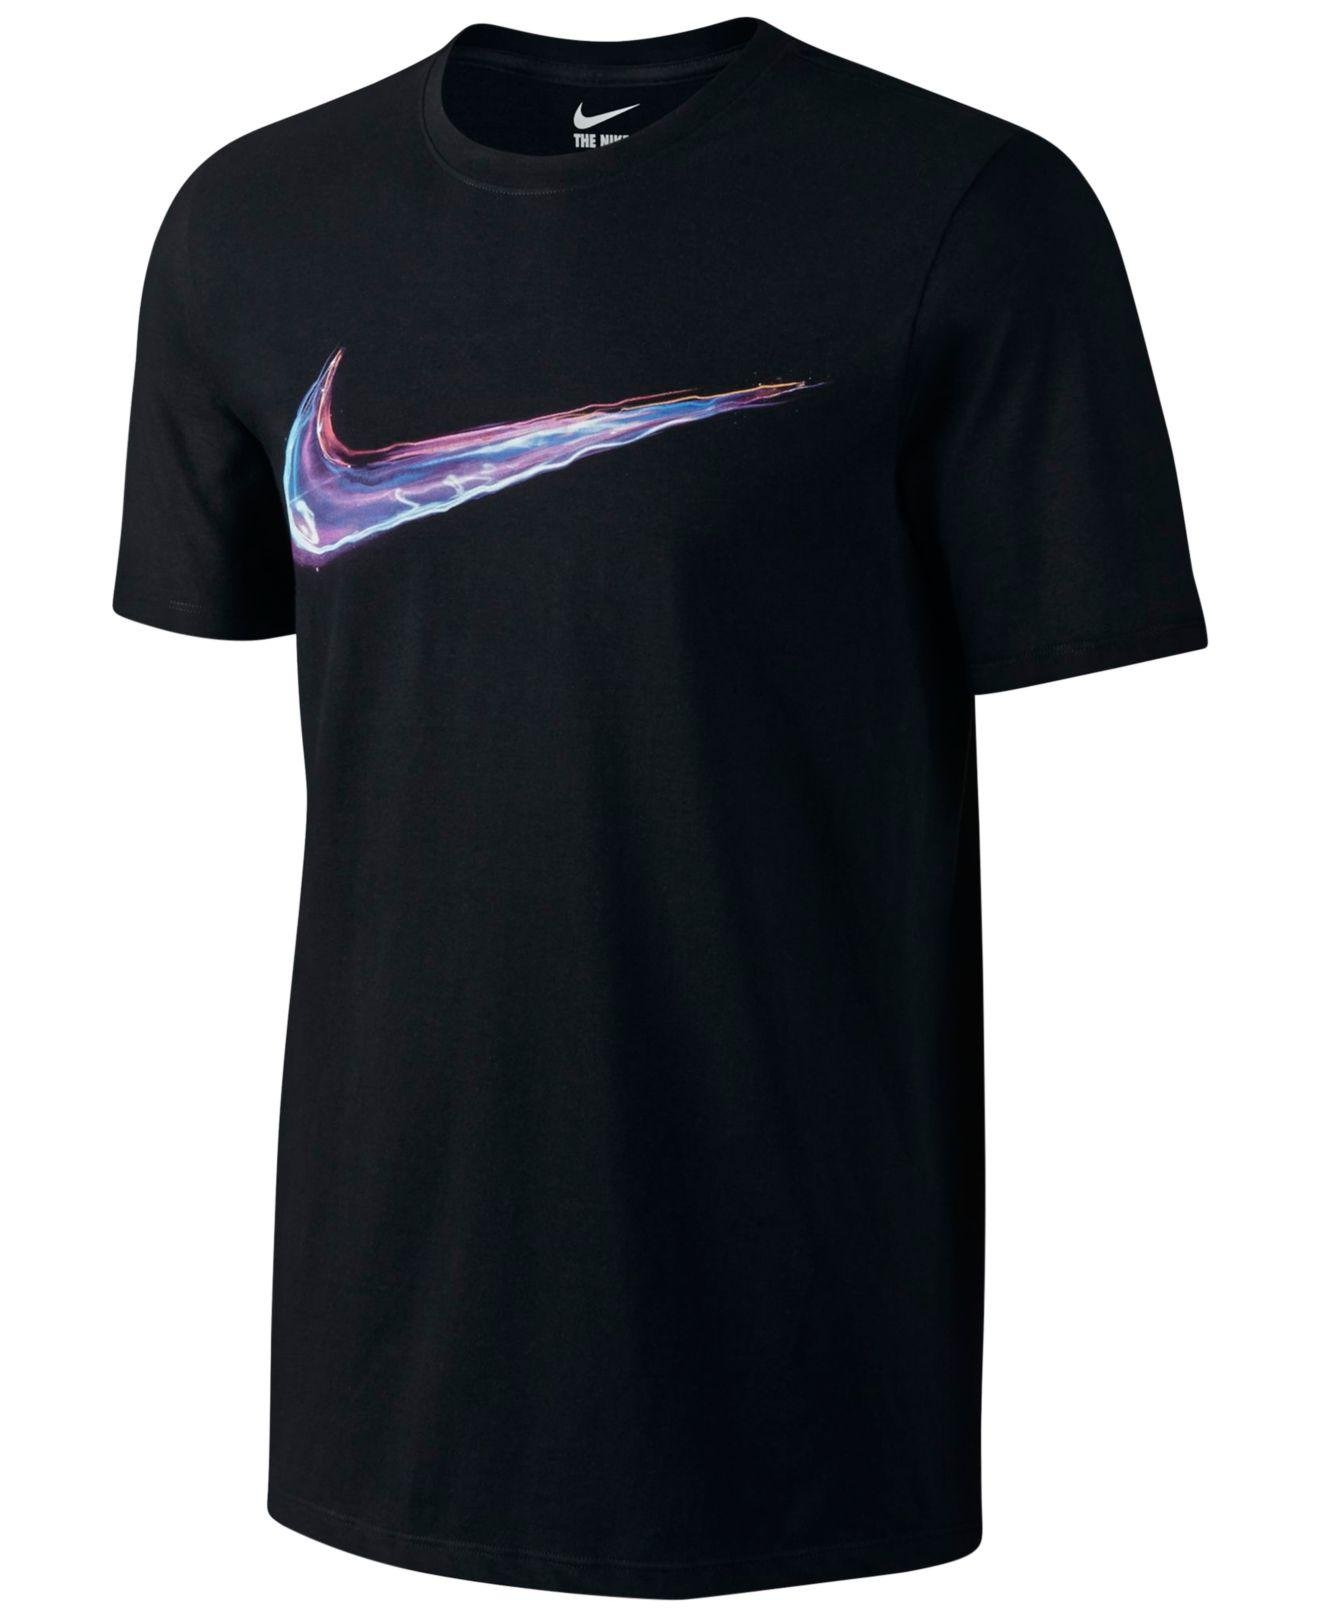 Nike Light Up Your Logo T-shirt in Black for Men - Lyst